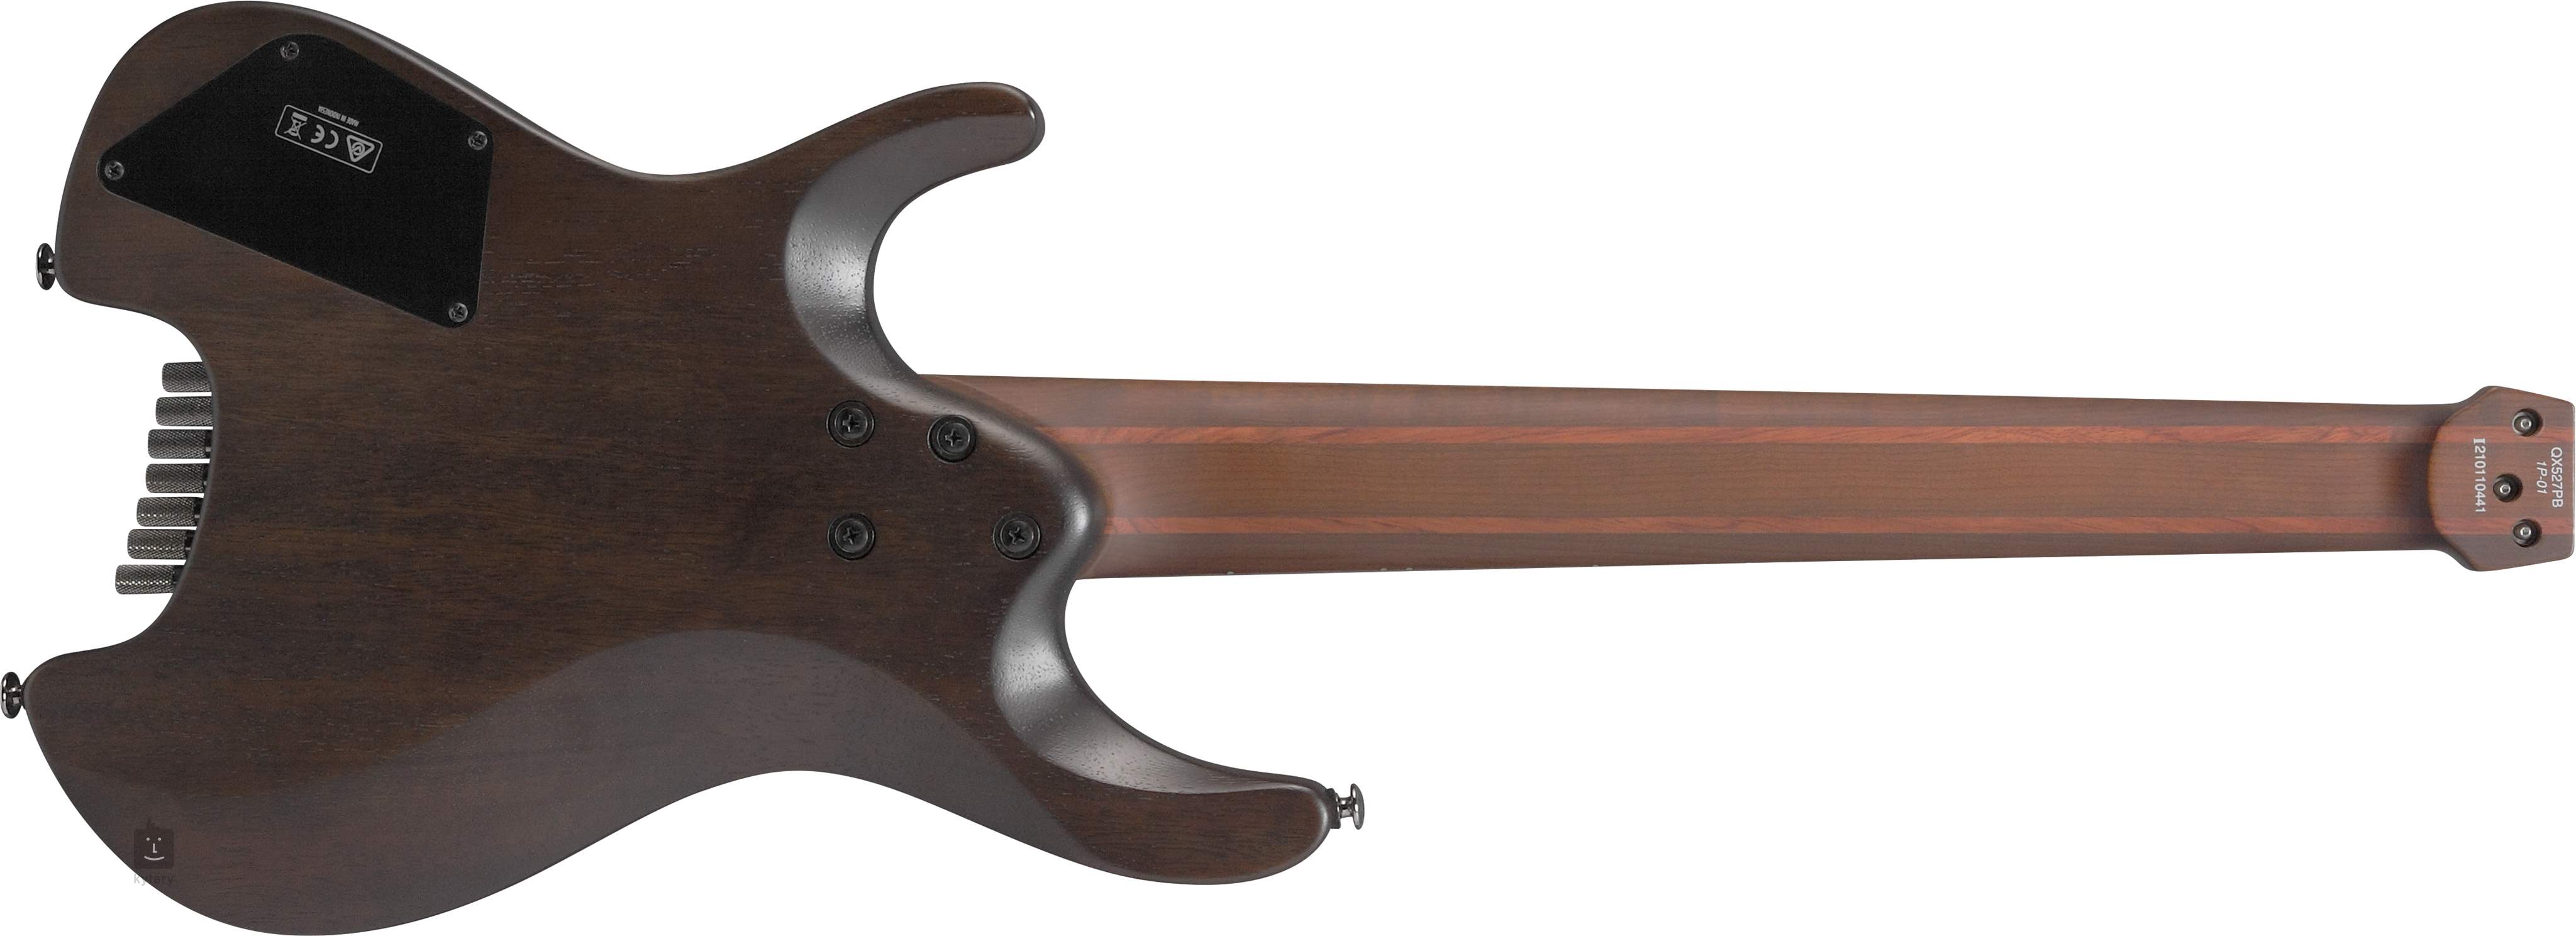 Ibanez Qx527pb Abs Quest 7c Hh Ht Mn - Antique Brown Stained - Guitare Électrique Multi-scale - Variation 1